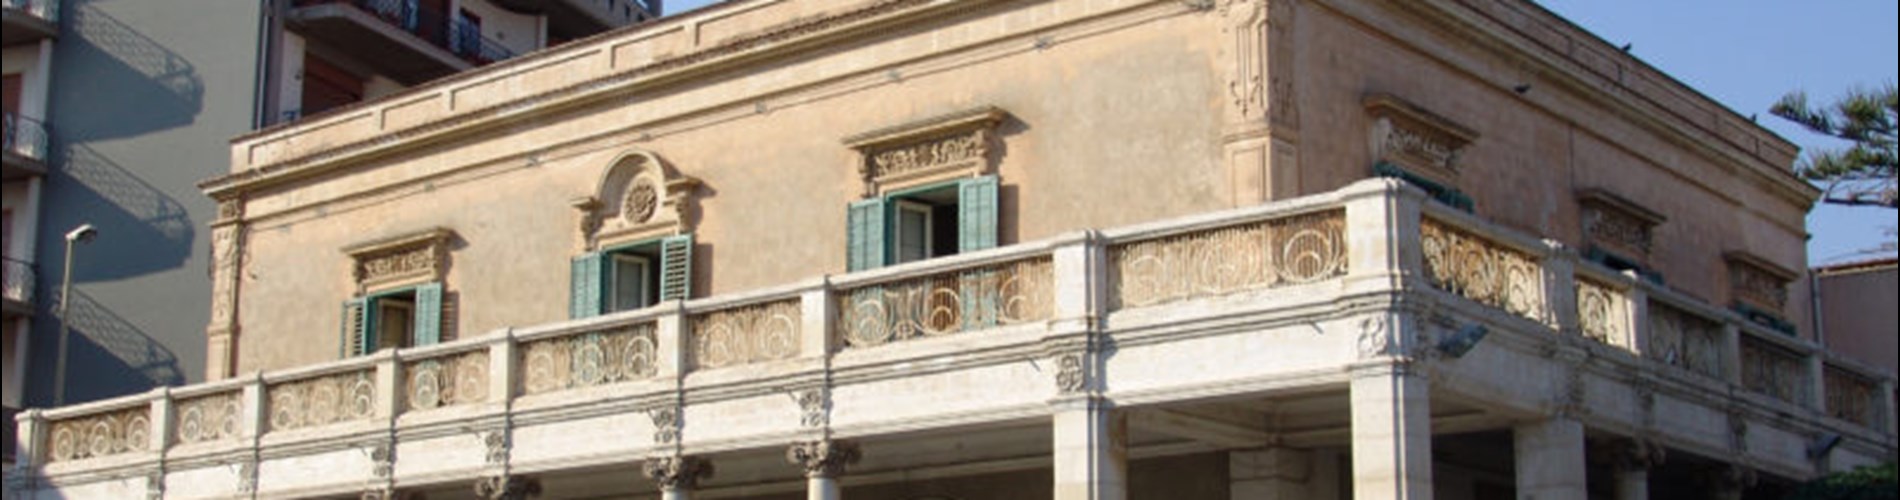 Palazzo Giunta - Musso